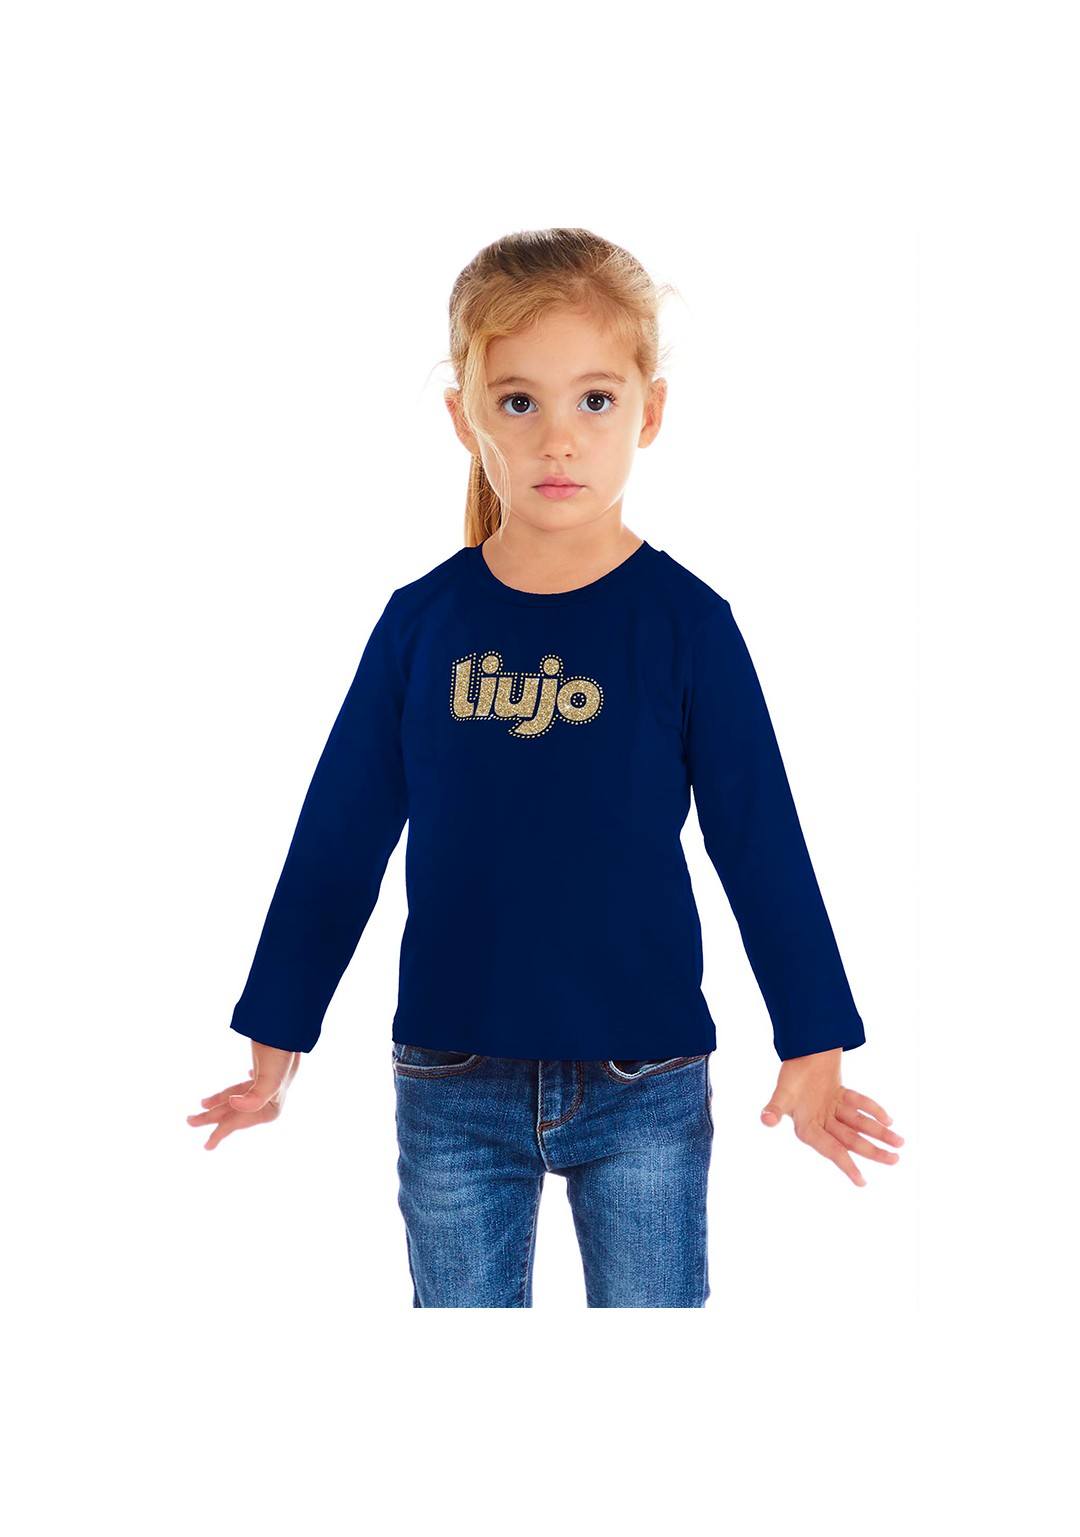 LIU JO - T-Shirt Logo - Bambine e ragazze - KF3048 J0088